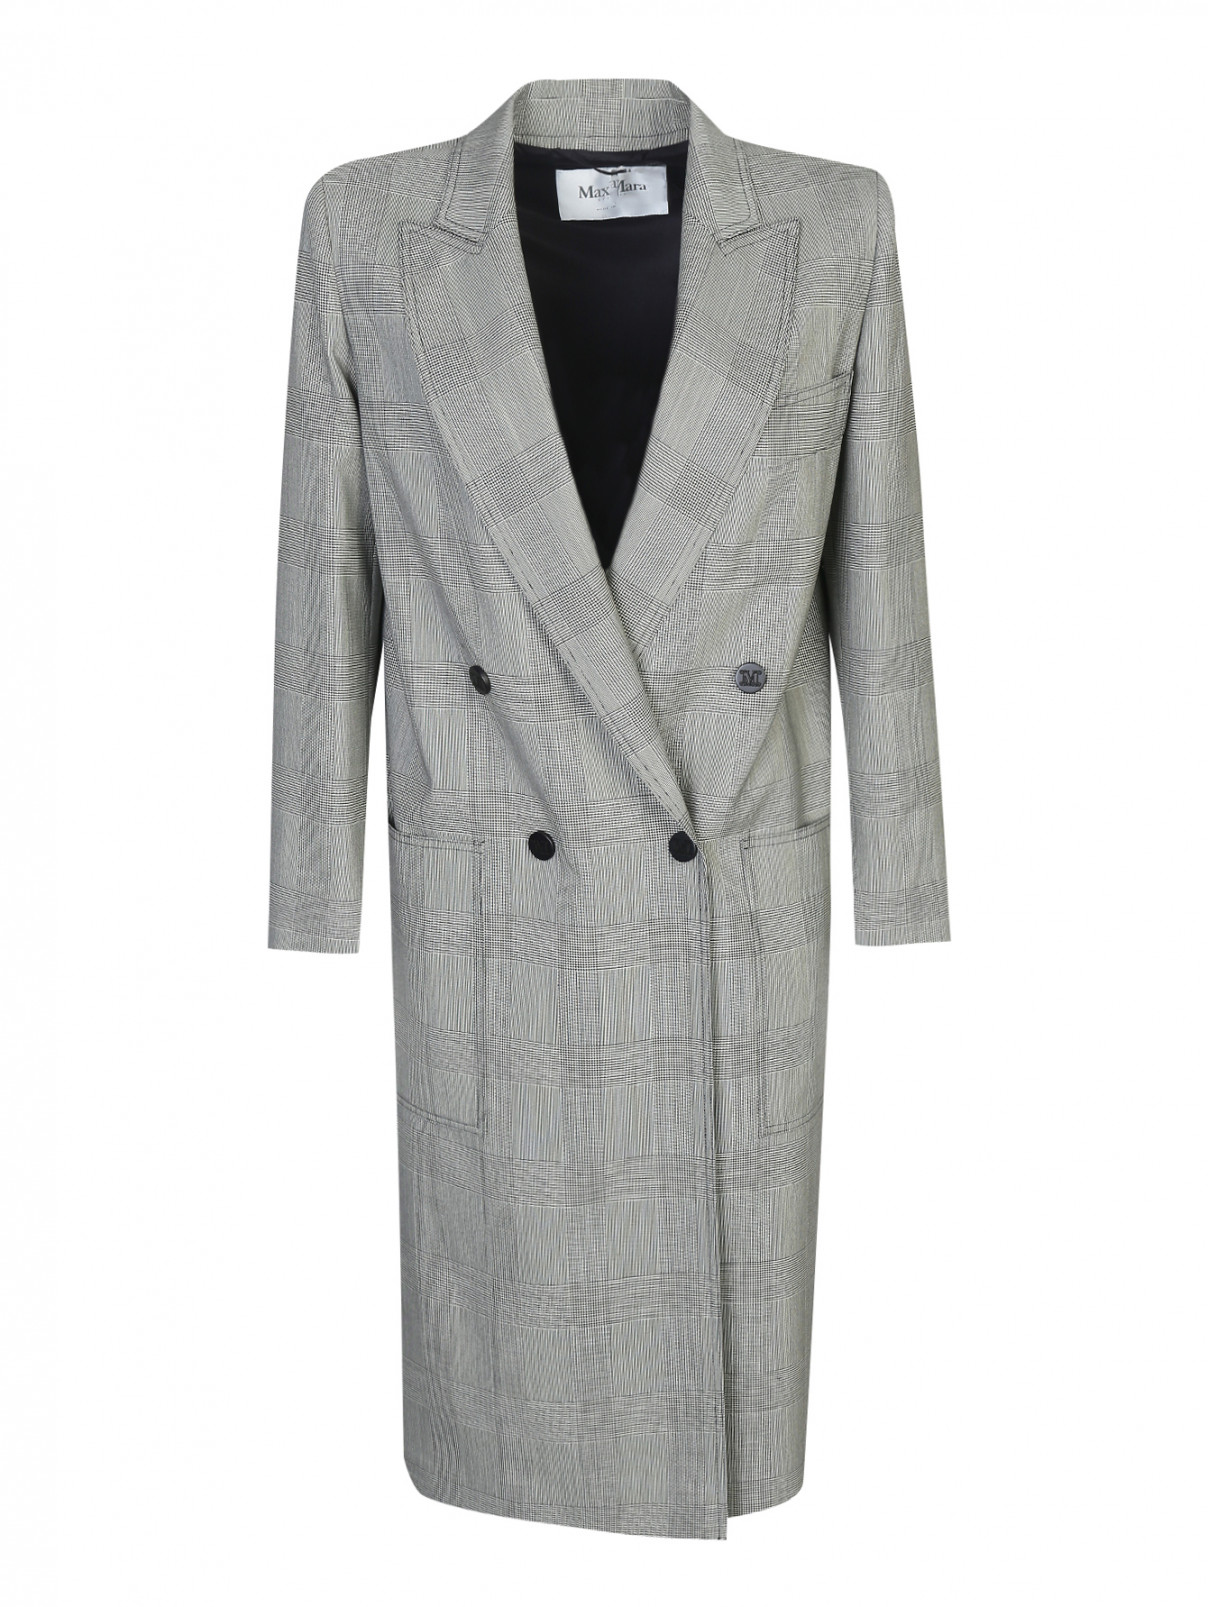 Двубортное пальто из шерсти с узором "клетка" и накладными карманами Max Mara  –  Общий вид  – Цвет:  Серый